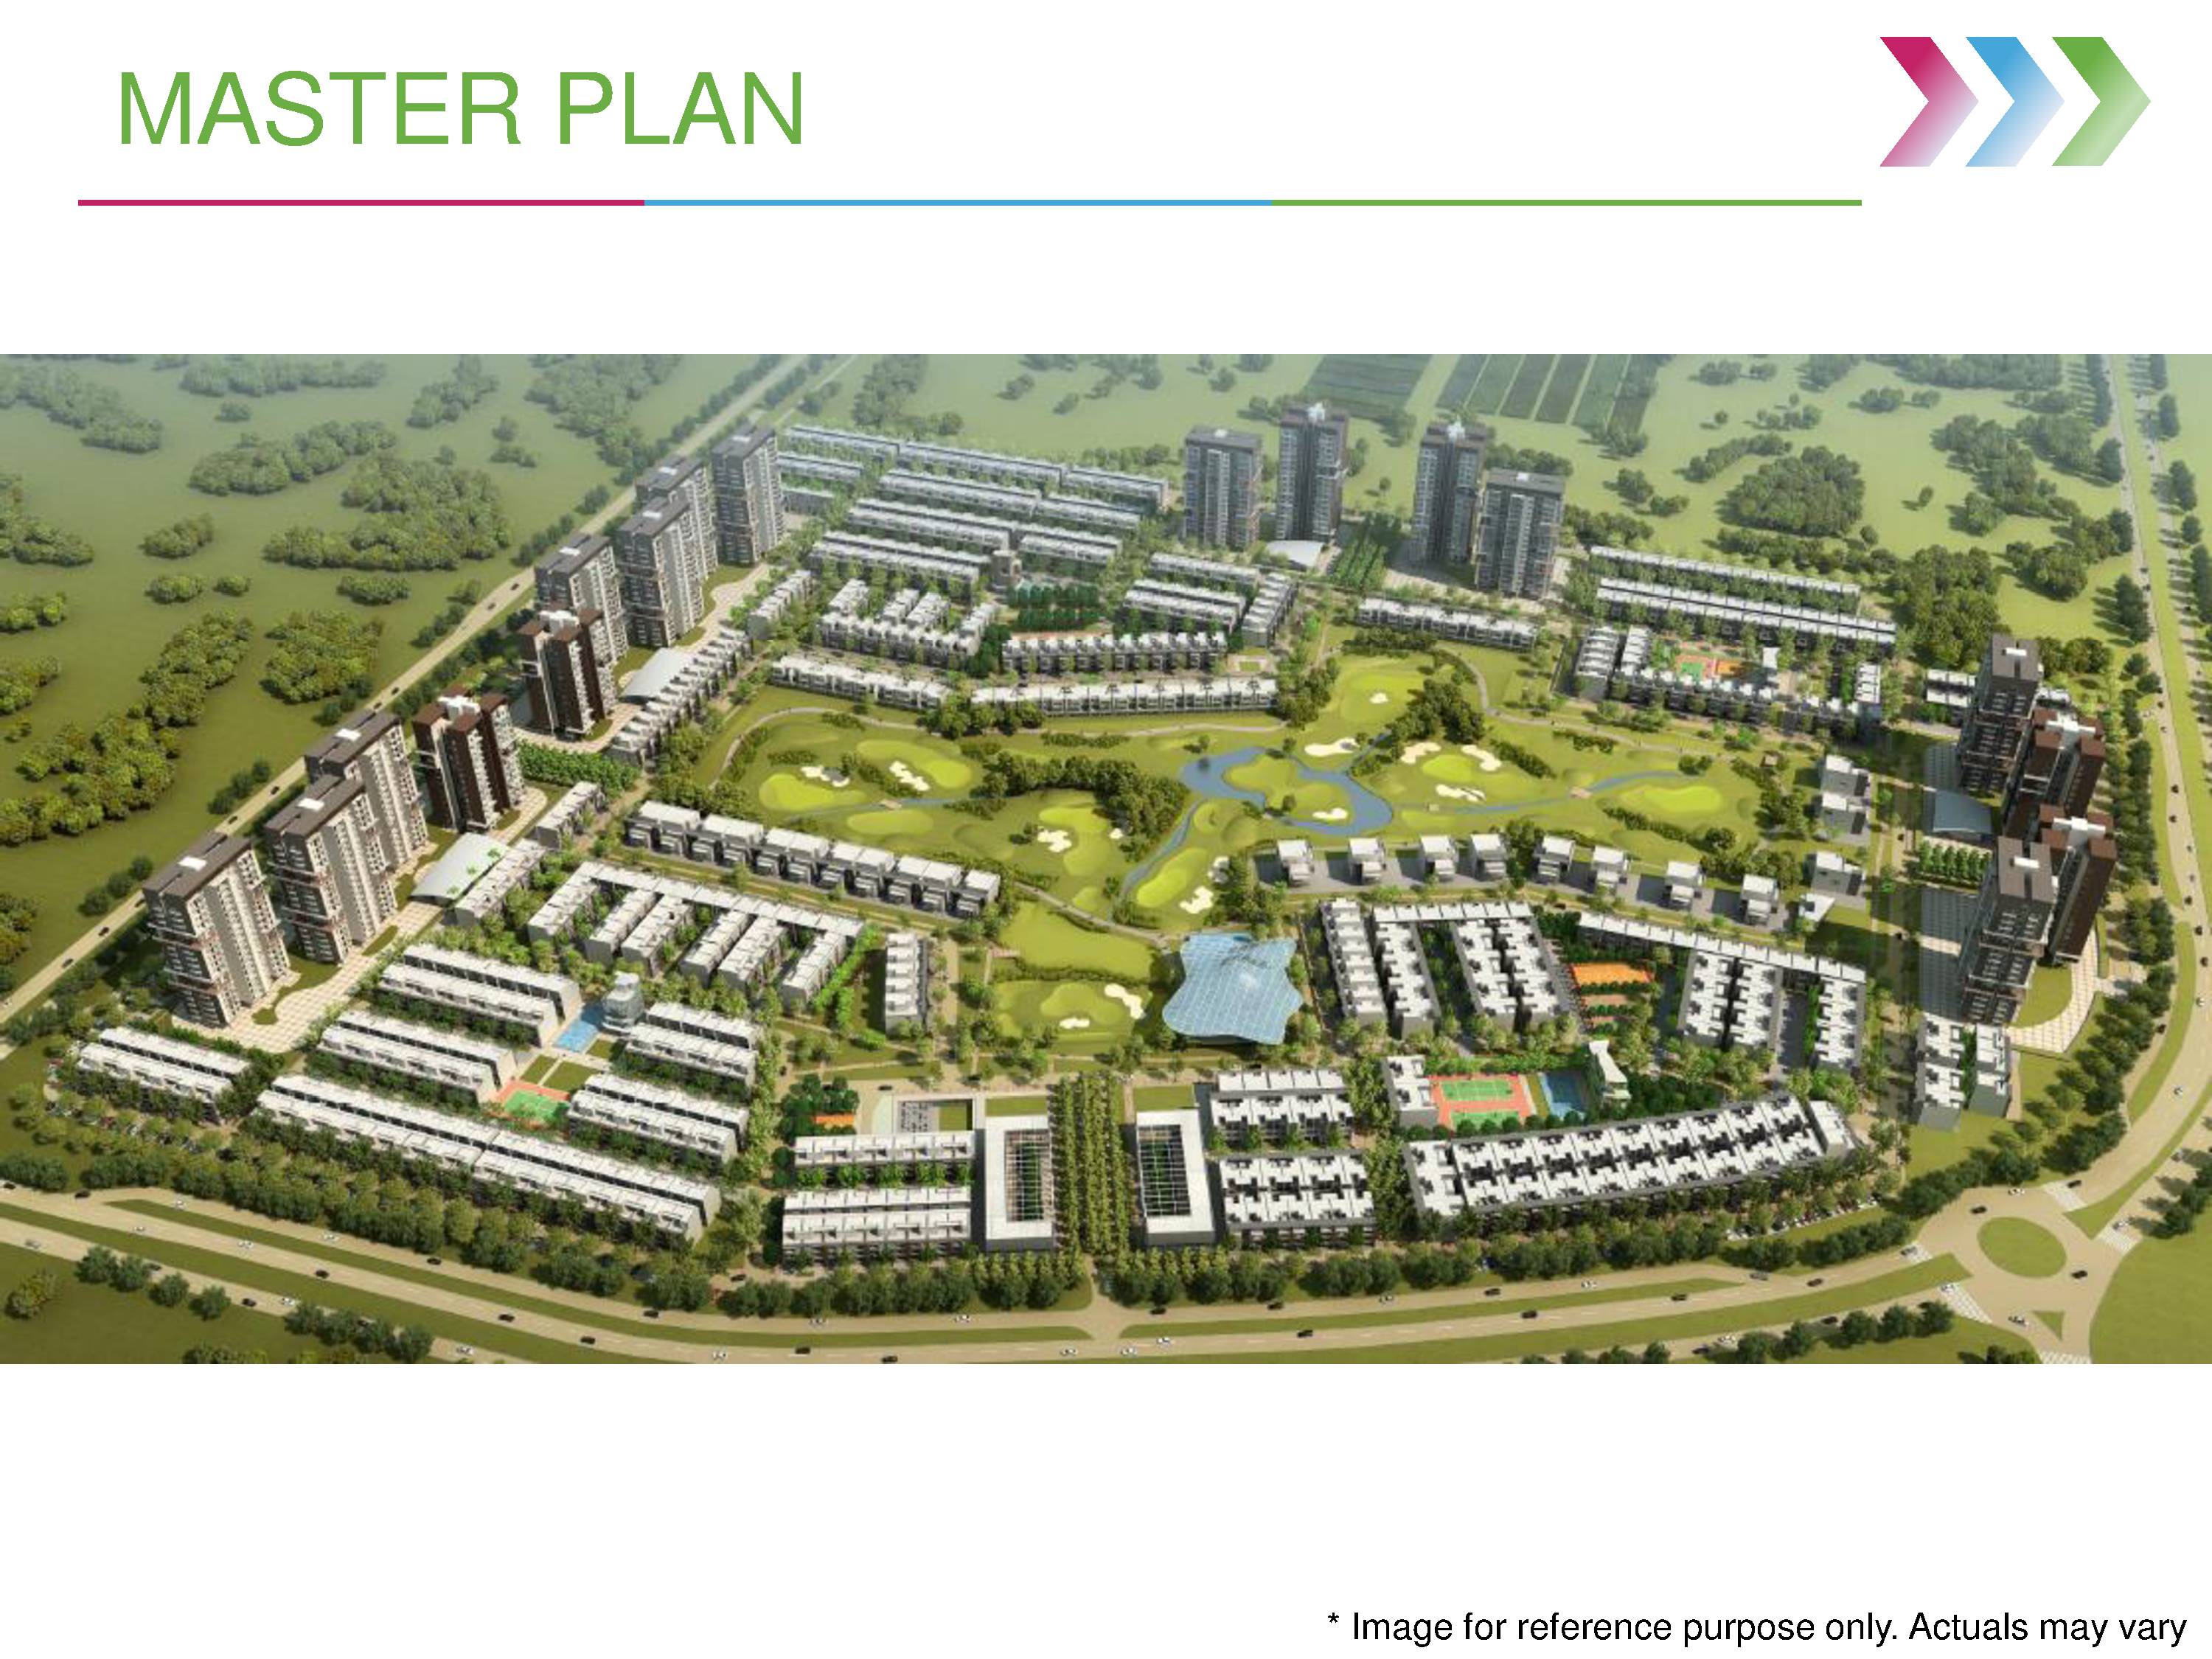 Godrej Villa Greater Noida Master Plan